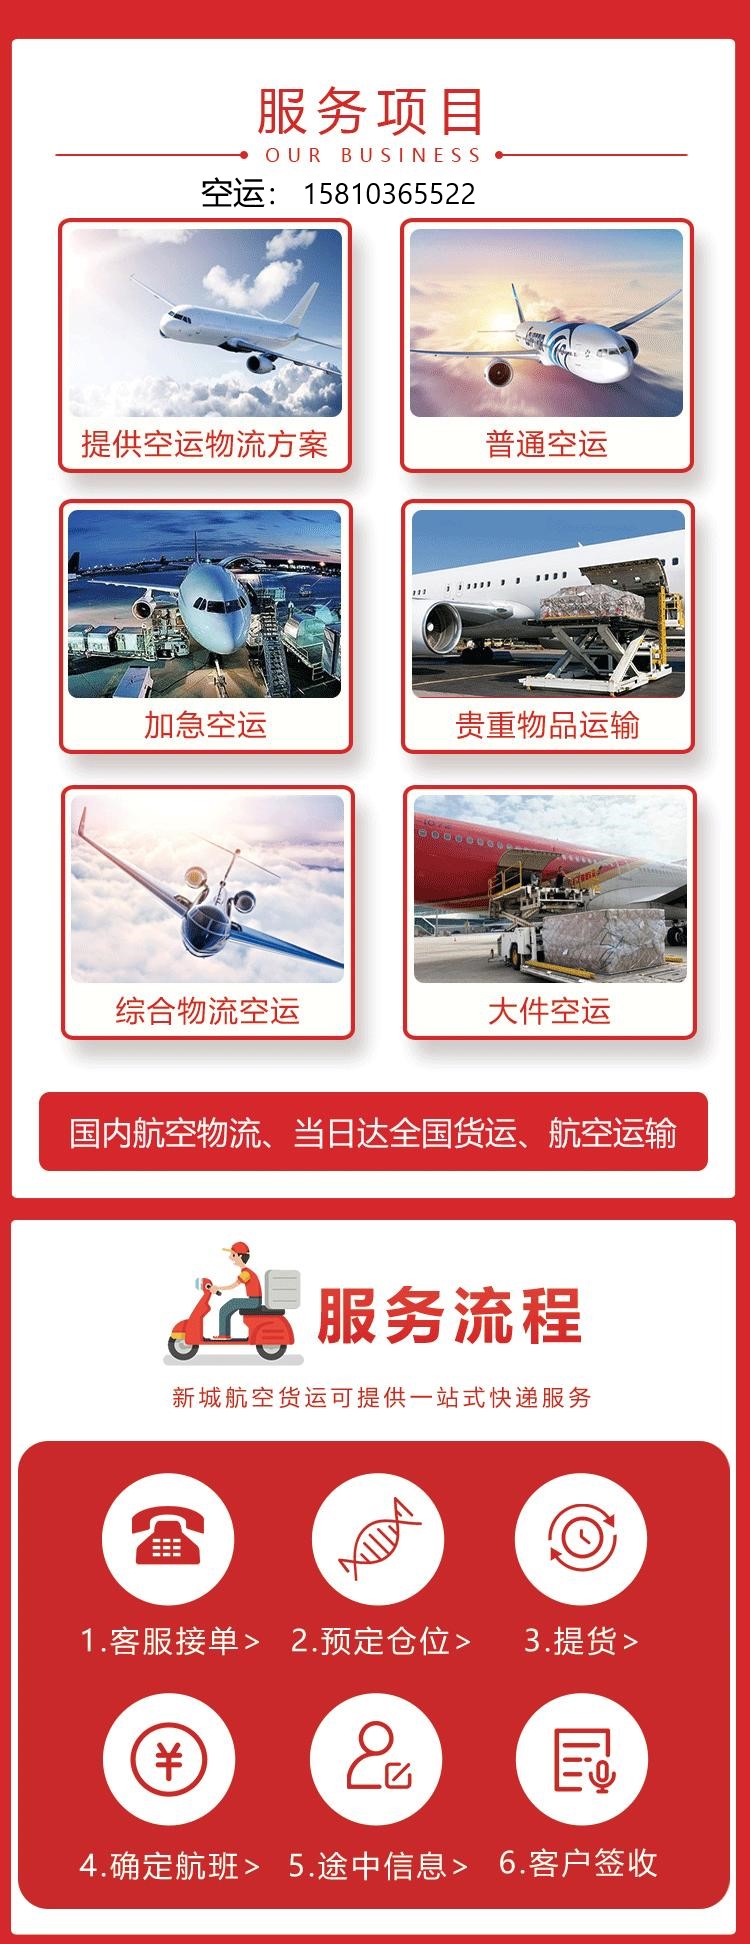 新闻:北京到大庆航空运输公司